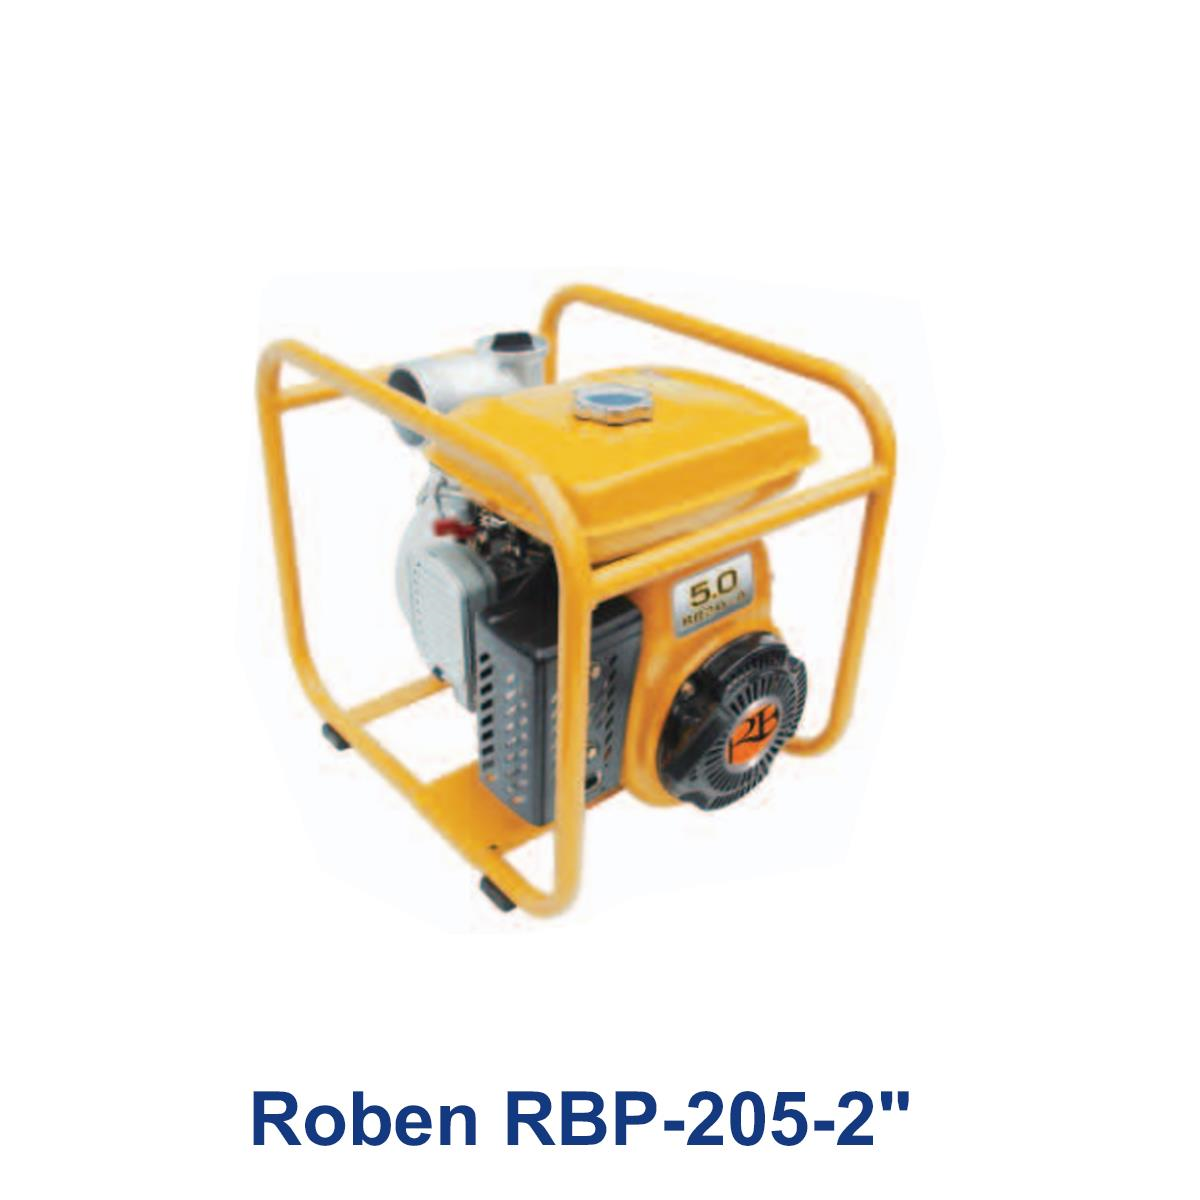 Roben-RBP-205-2